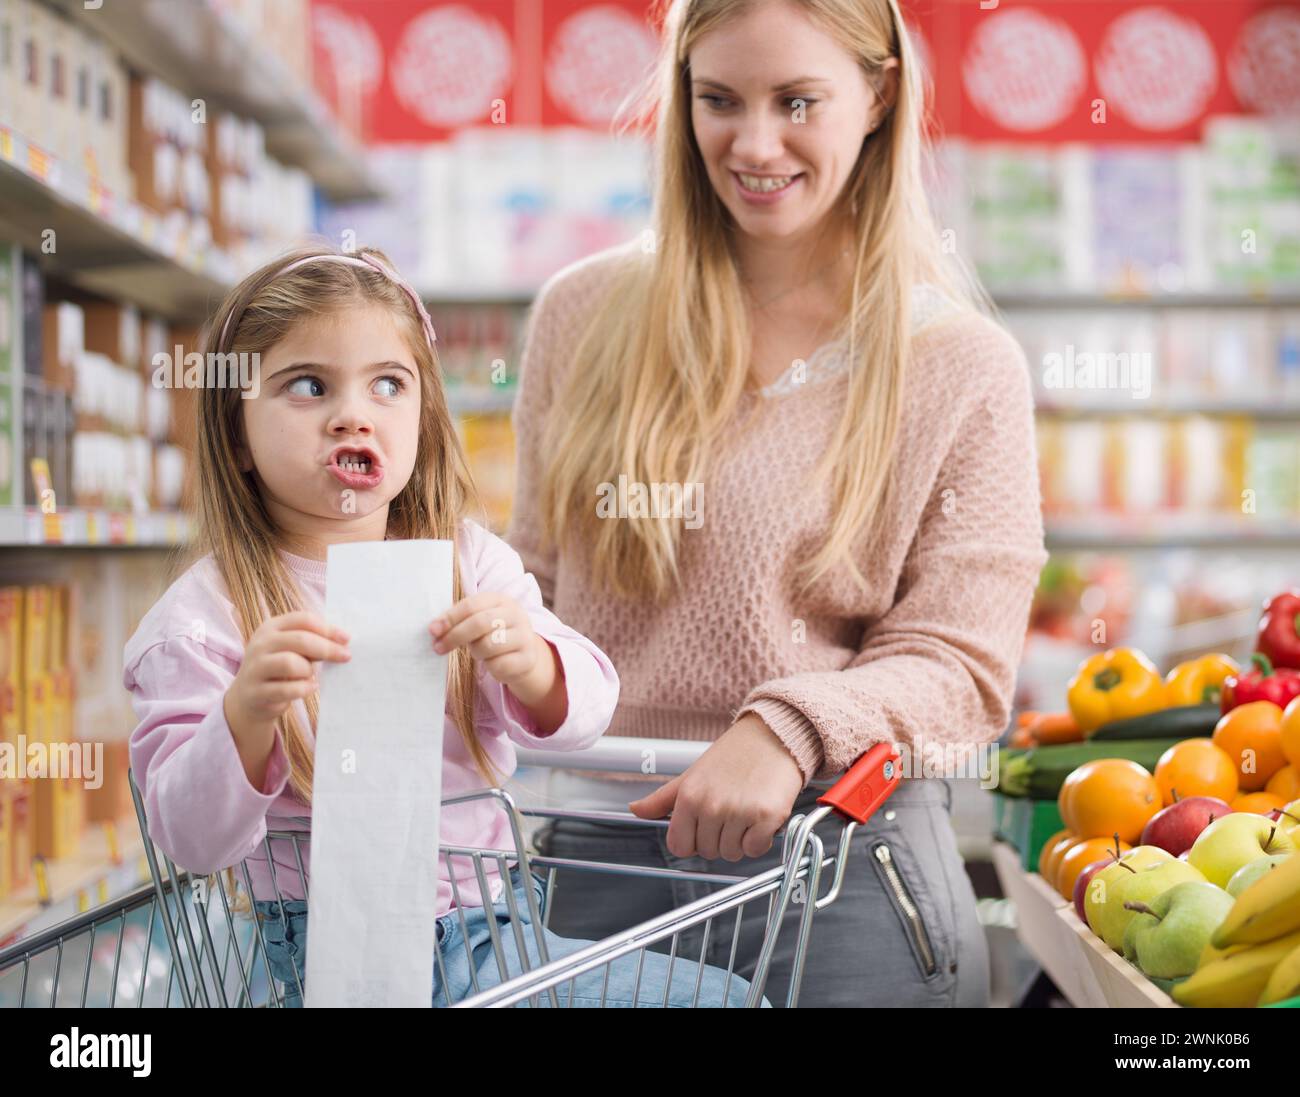 Enttäuschtes Mädchen im Supermarkt mit ihrer Mutter, sie hat eine lange teure Lebensmittelquittung Stockfoto